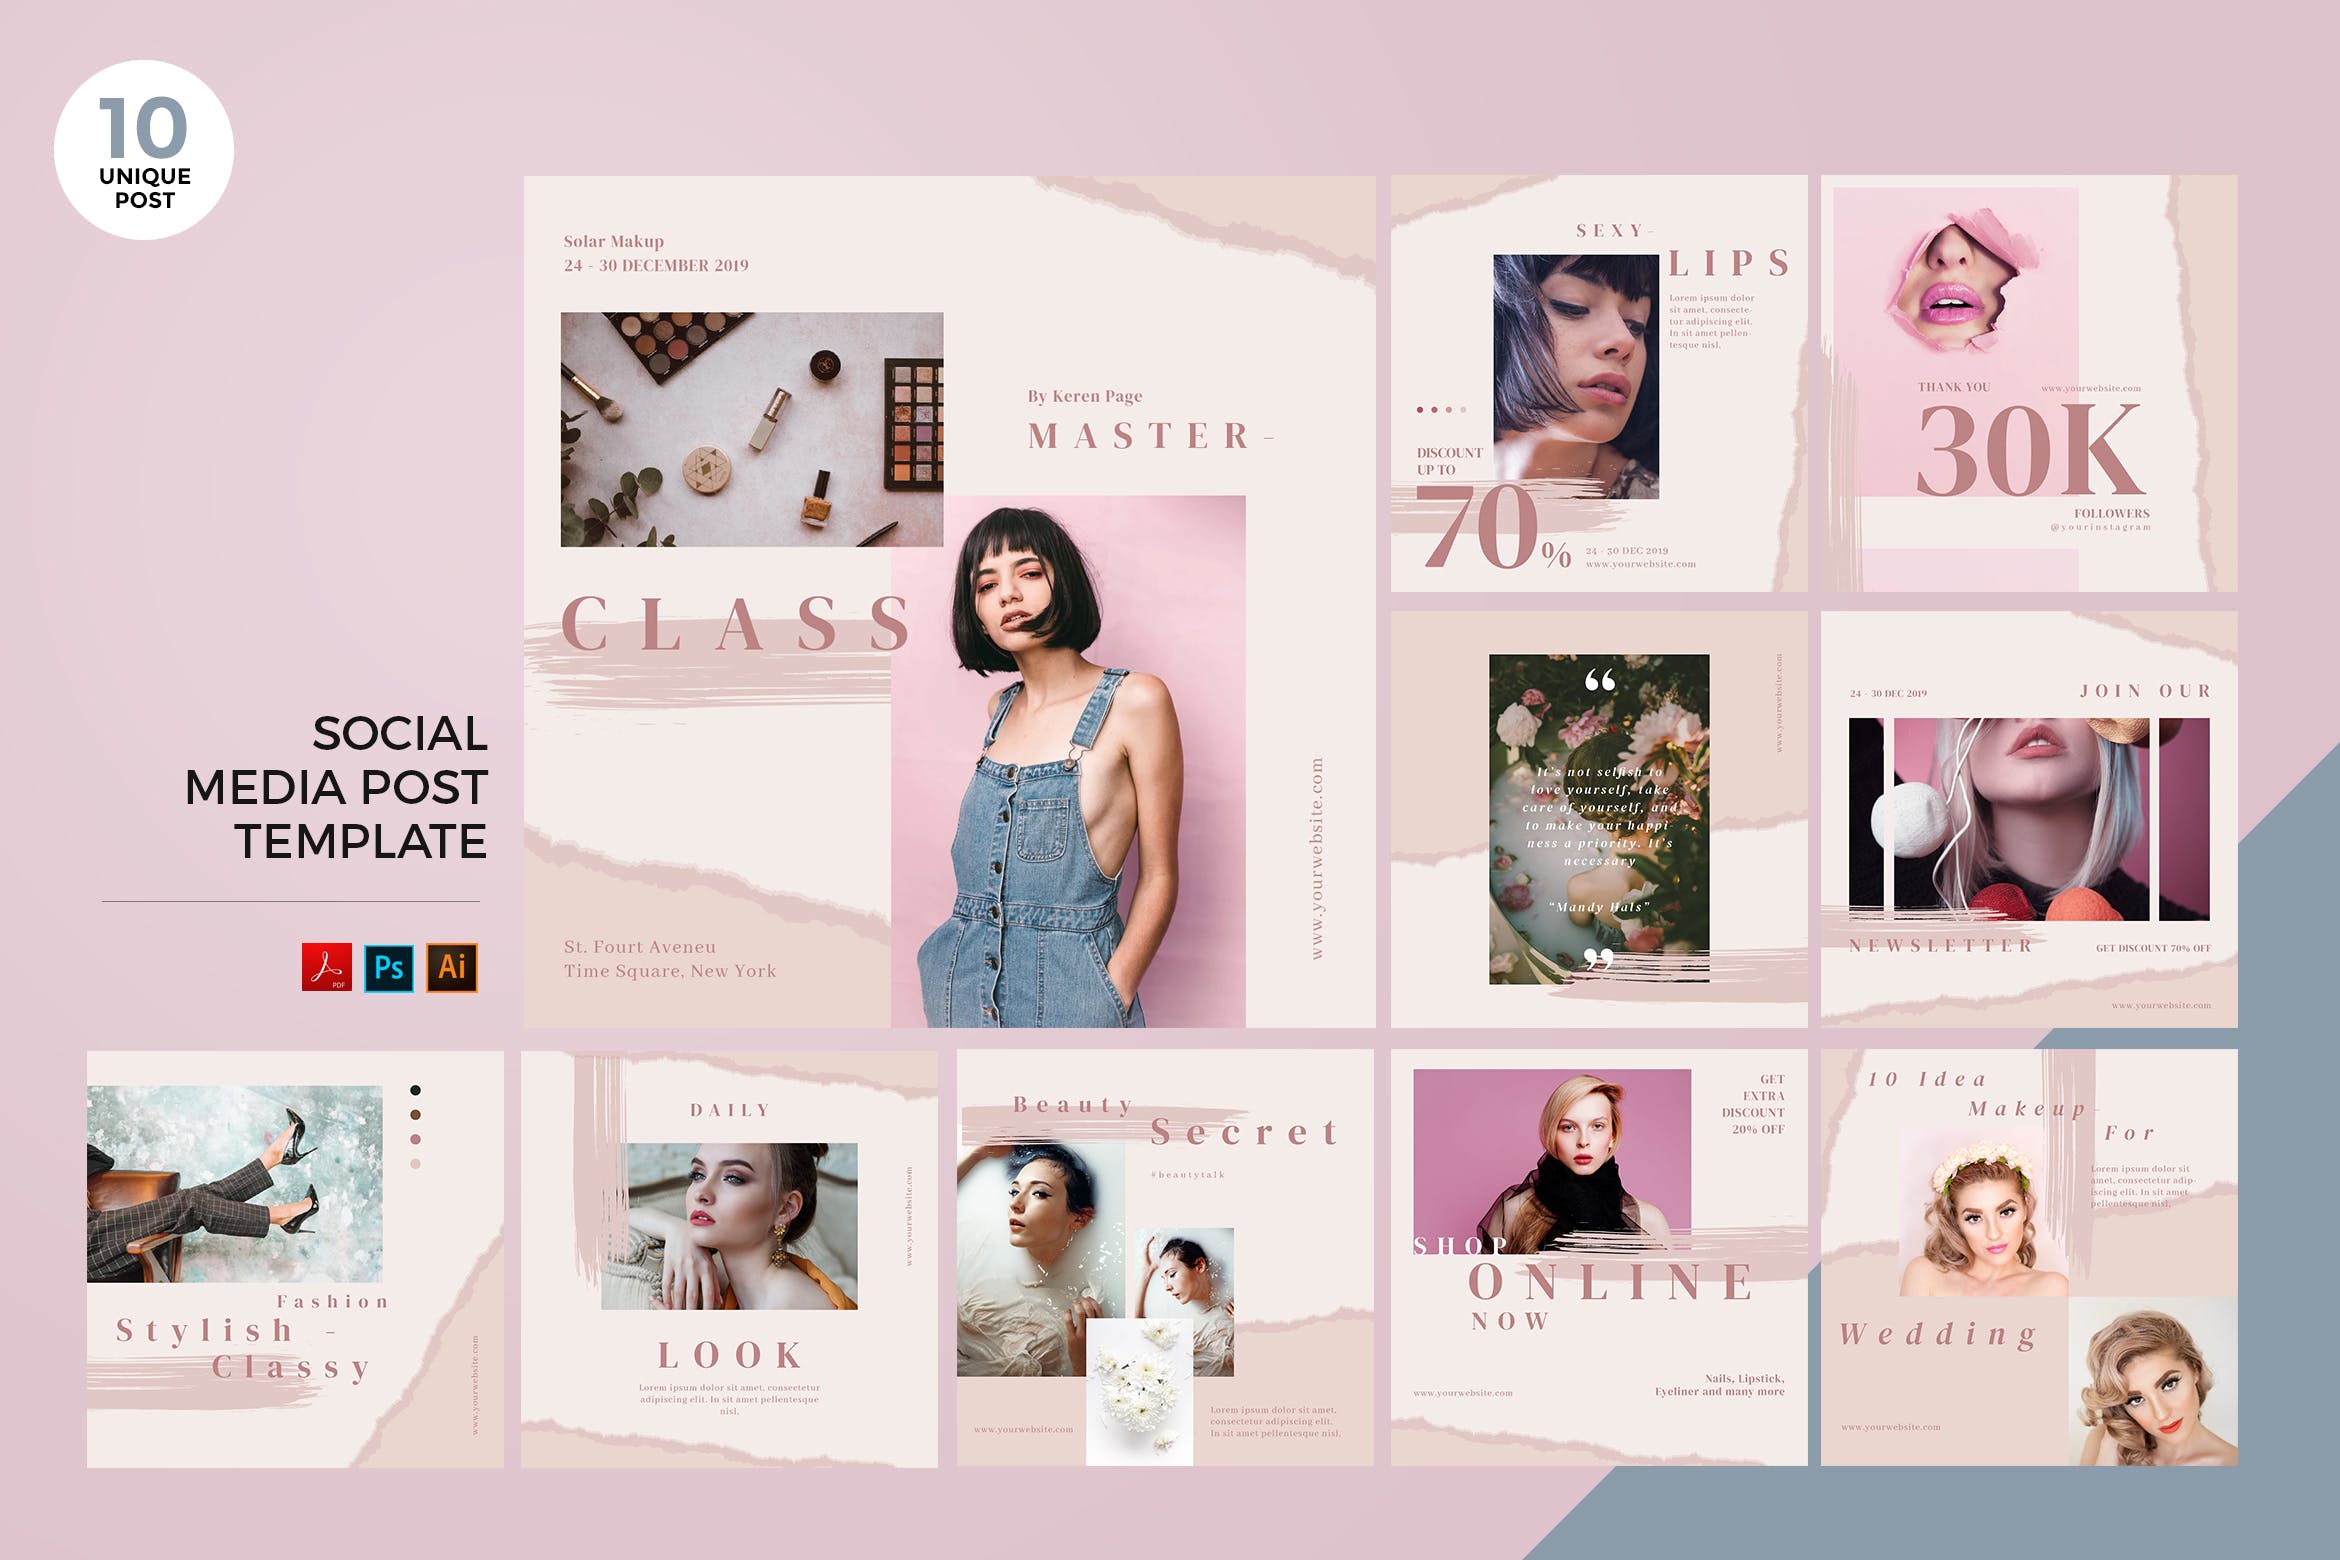 时尚化妆品推广社交媒体设计素材包 Fashion Cosmetic Social Media Kit PSD & AI插图